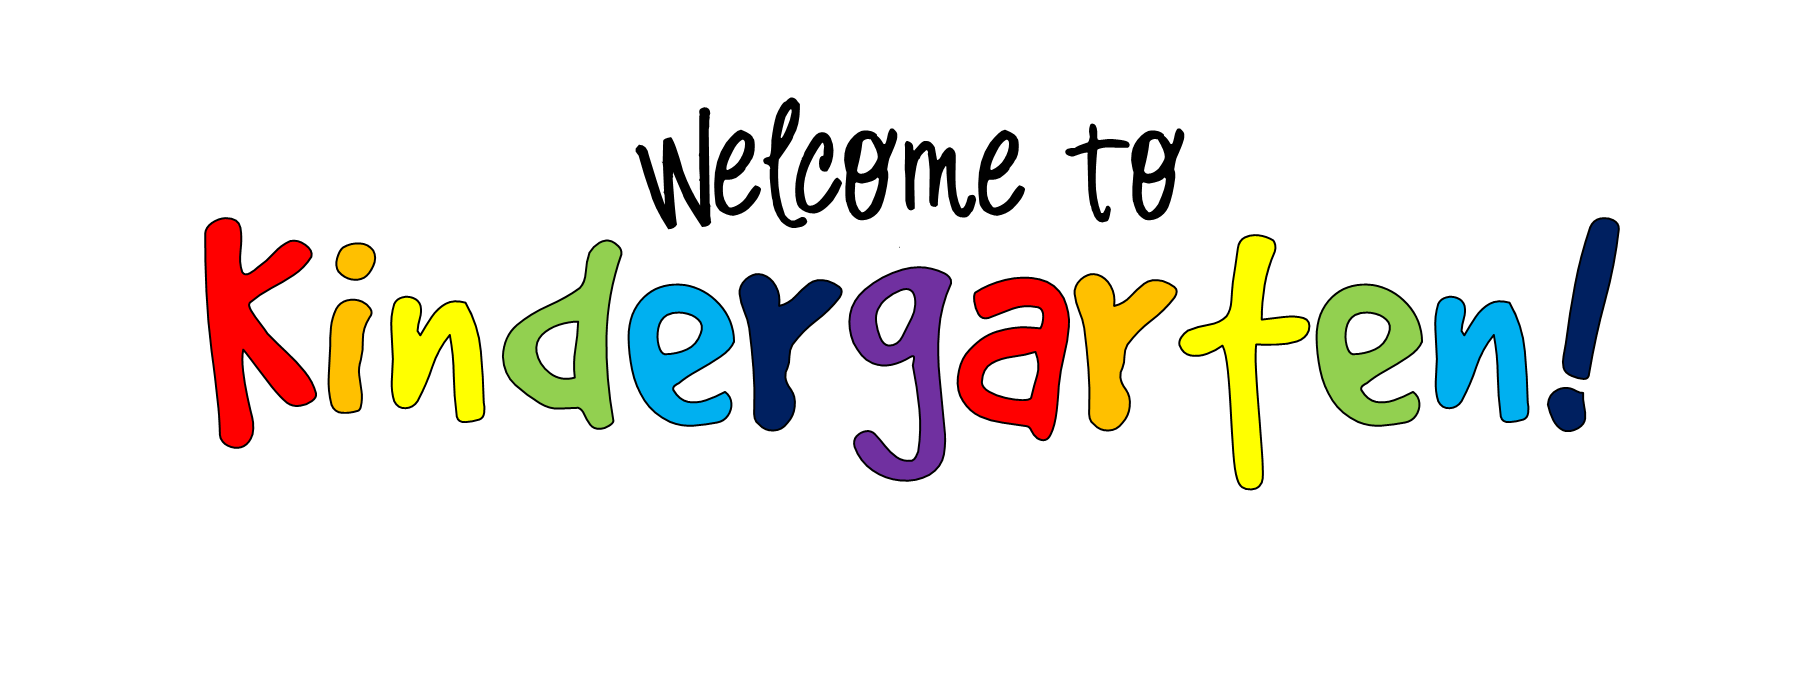 Kindergarten-clip-art-to-download-4.png (1820×700)